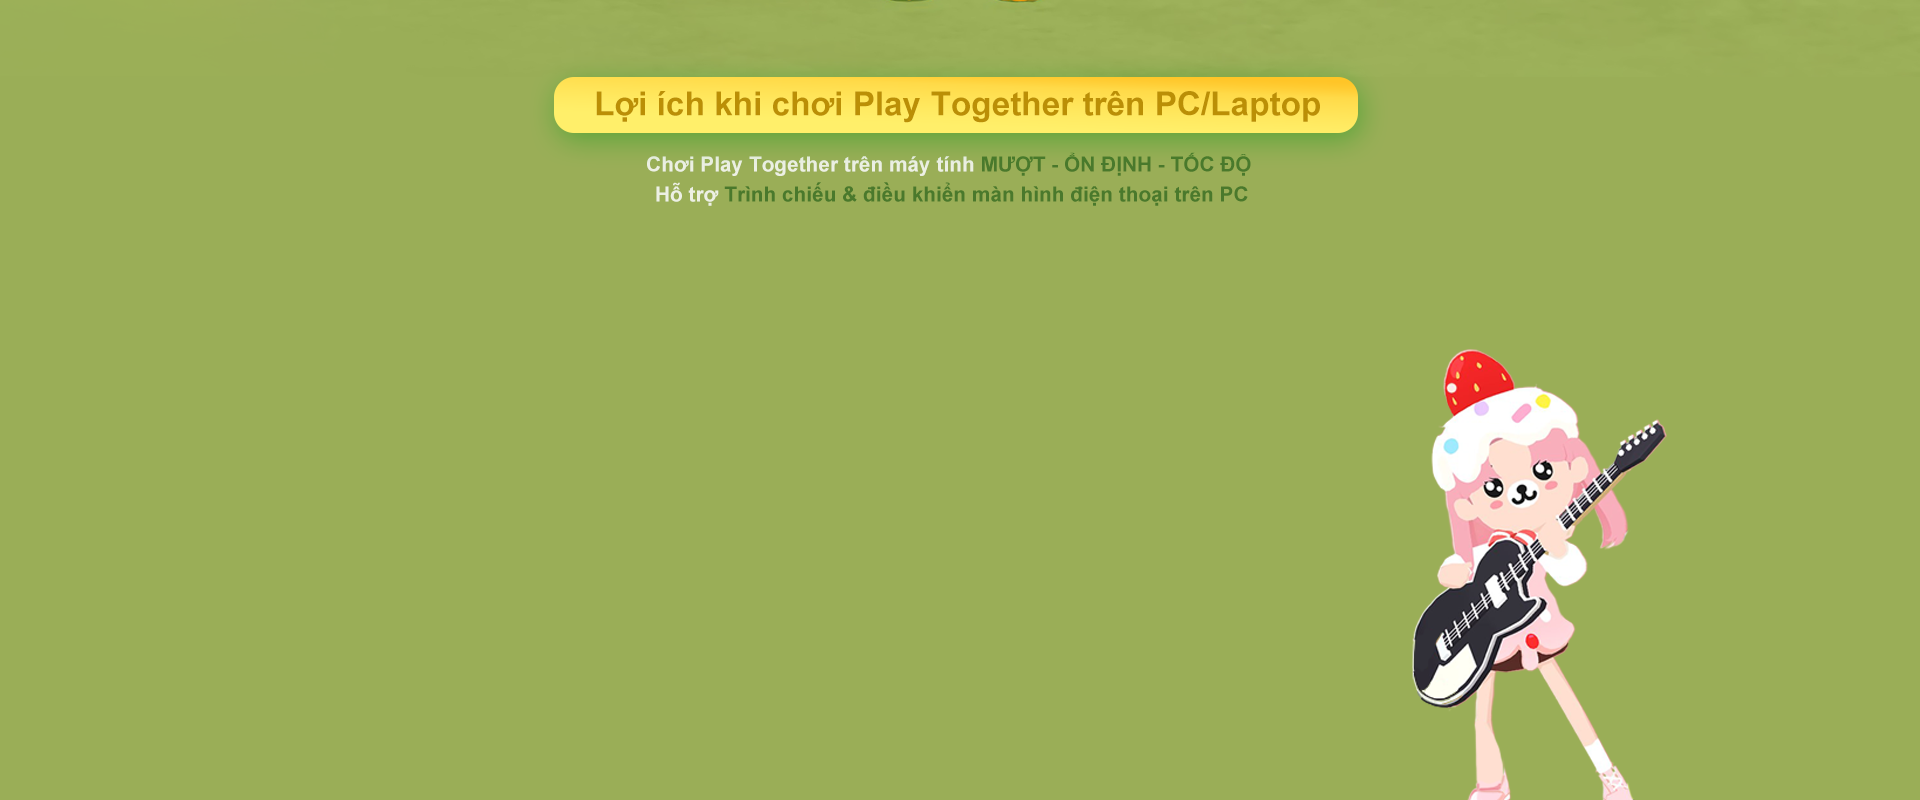 Cách chơi Play Together now gg online free không cần tải